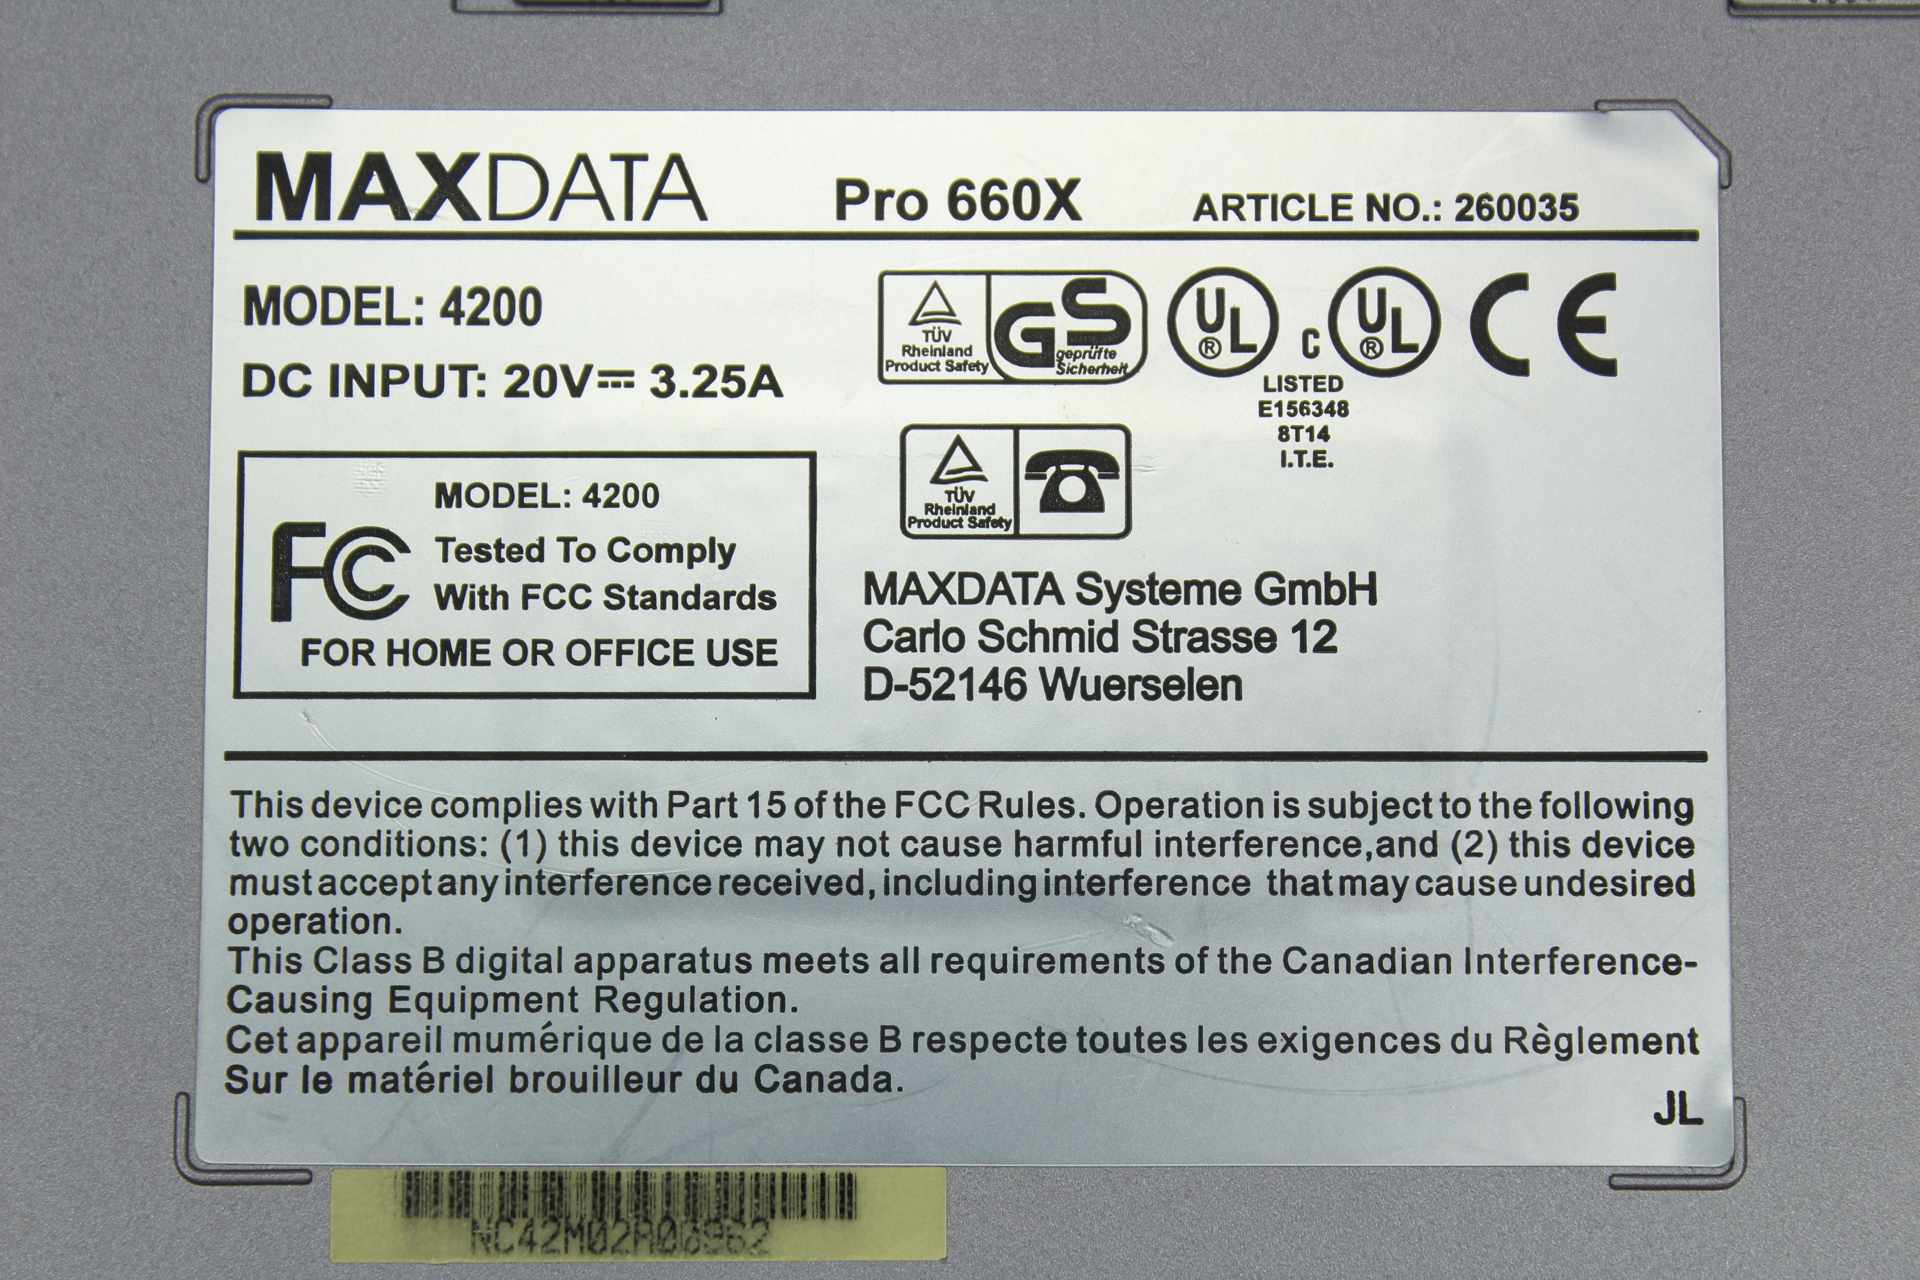 Maxdata Pro 660X